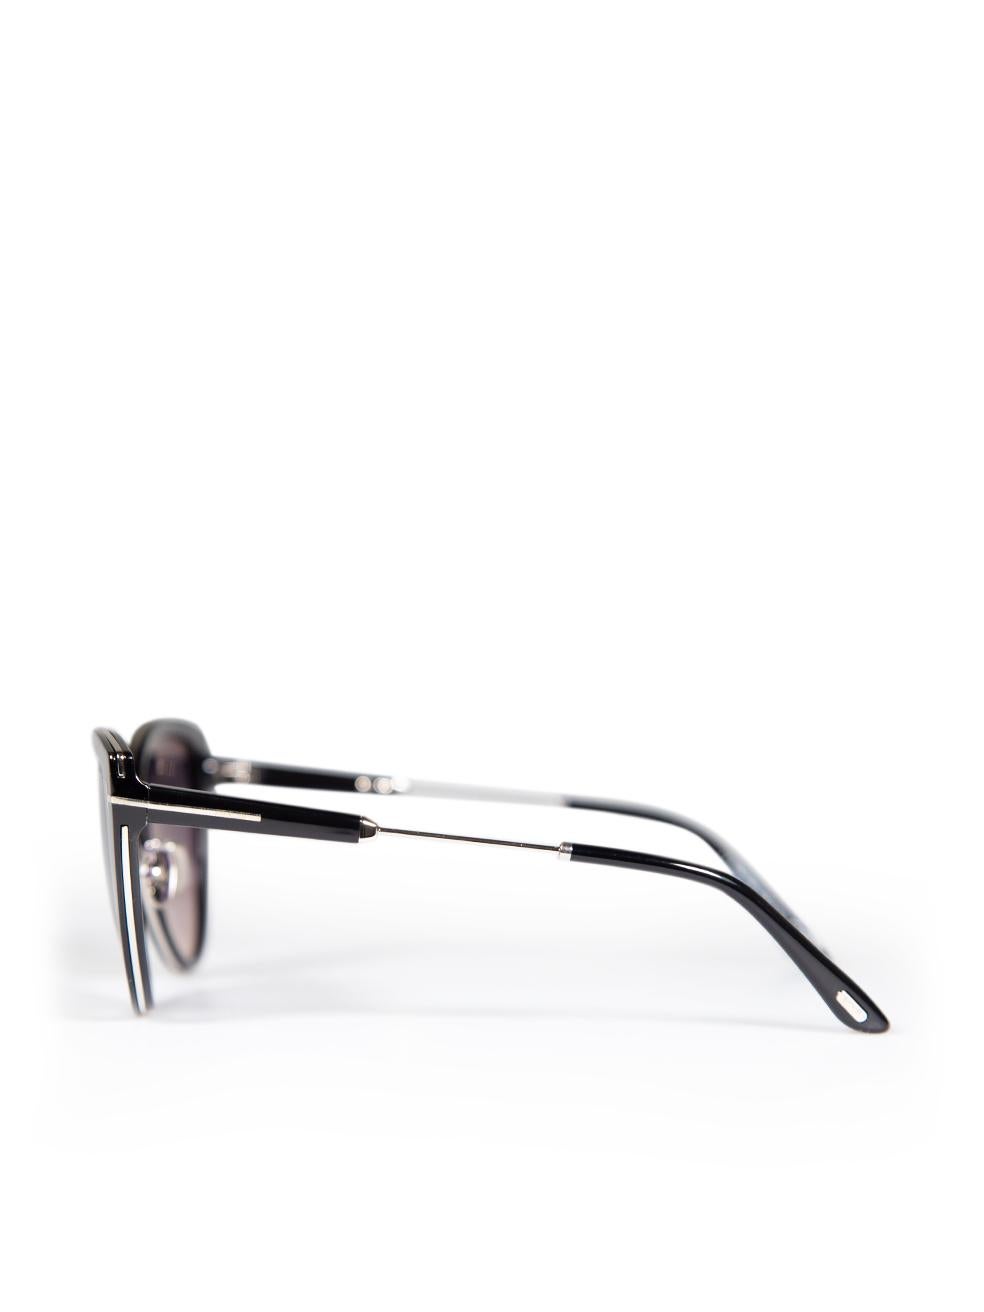 Tom Ford Shiny Black Anjelica Sunglasses For Sale 1